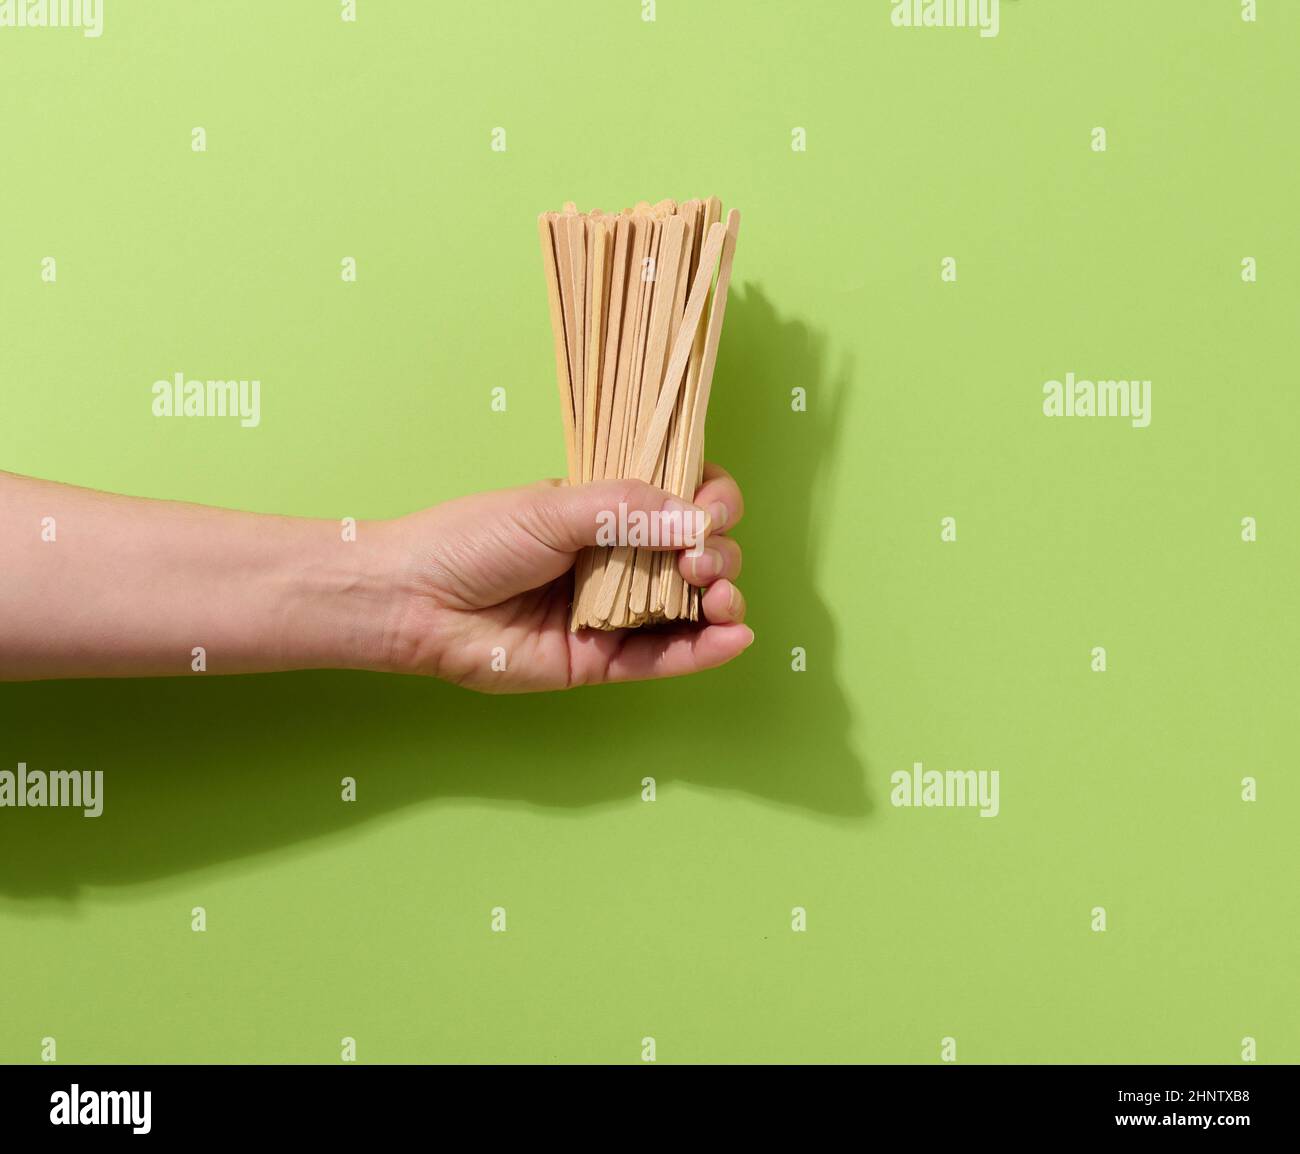 Weibliche Hand hält Einweg-Holzstäbchen zum Rühren von heißen Getränken auf grünem Hintergrund. Kaffee- und Teelöffel, kein Abfall Stockfoto